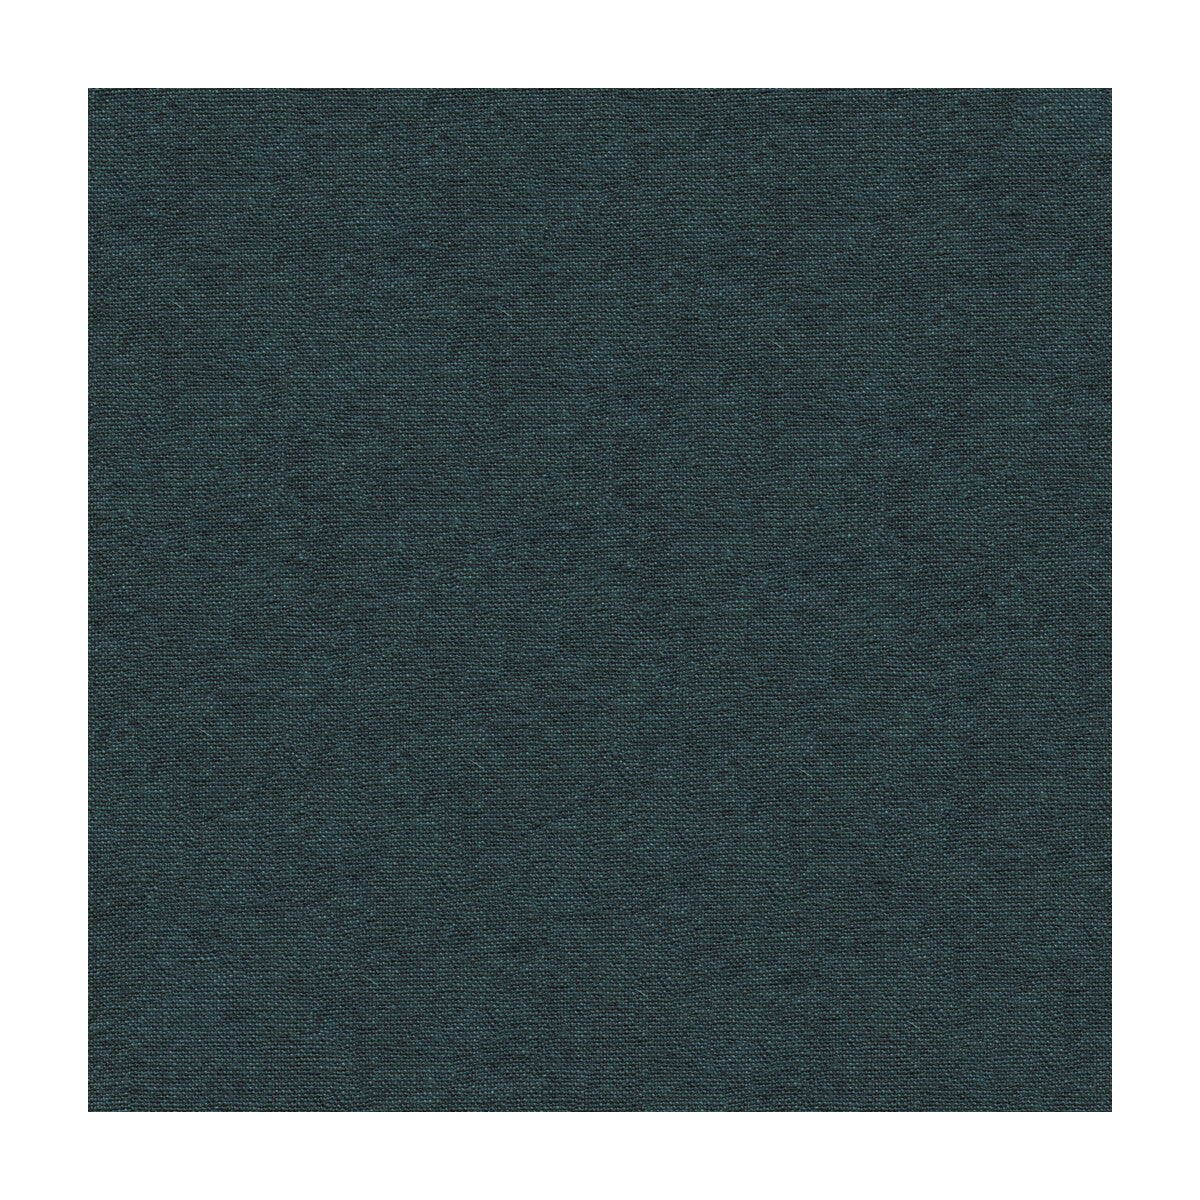 Kravet Basics fabric in 33773-50 color - pattern 33773.50.0 - by Kravet Basics